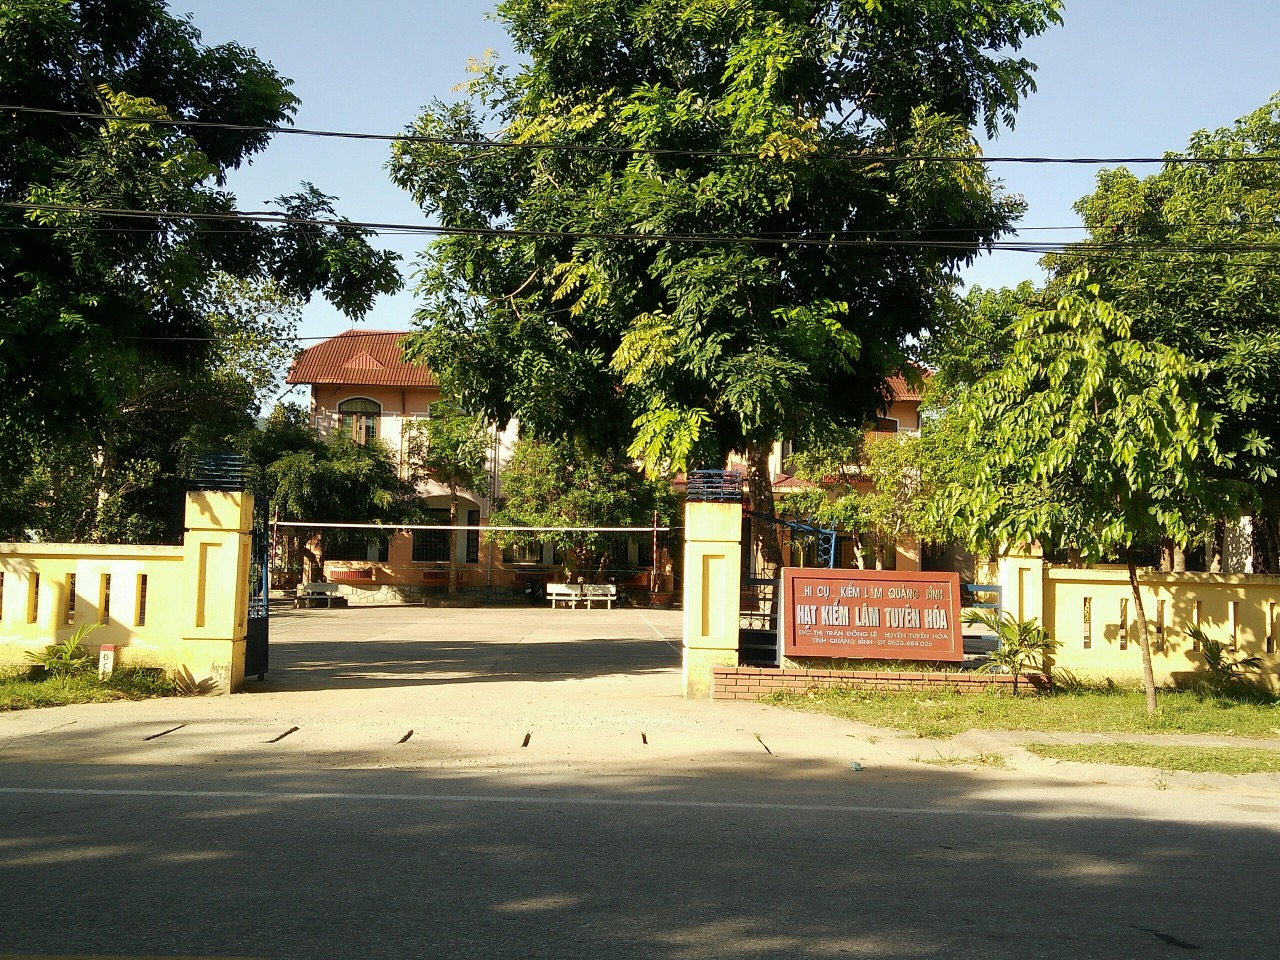 Trụ sở Hạt kiểm lâm Tuyên Hóa, nơi xảy ra vụ việc